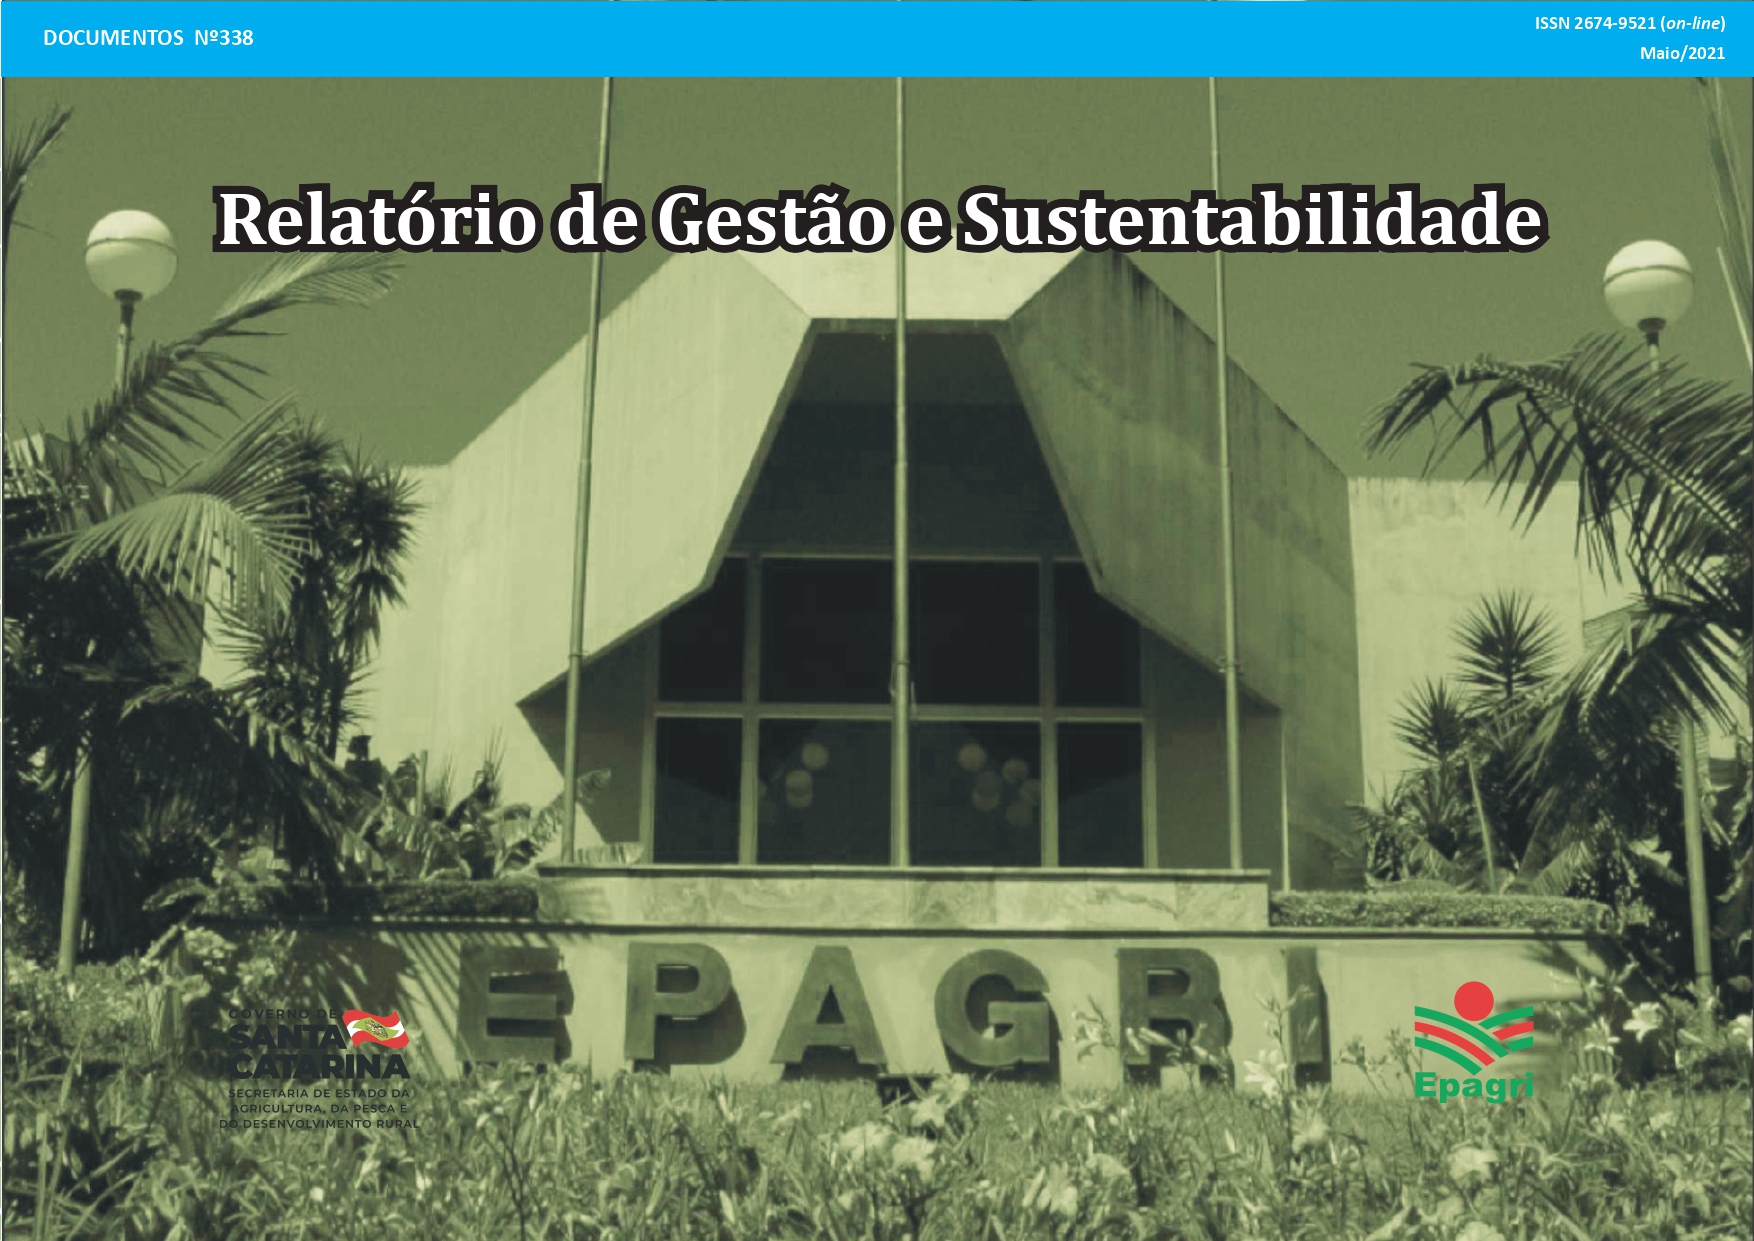 					Visualizar v. 338 (2021): Relatório de Gestão e Sustentabilidade
				